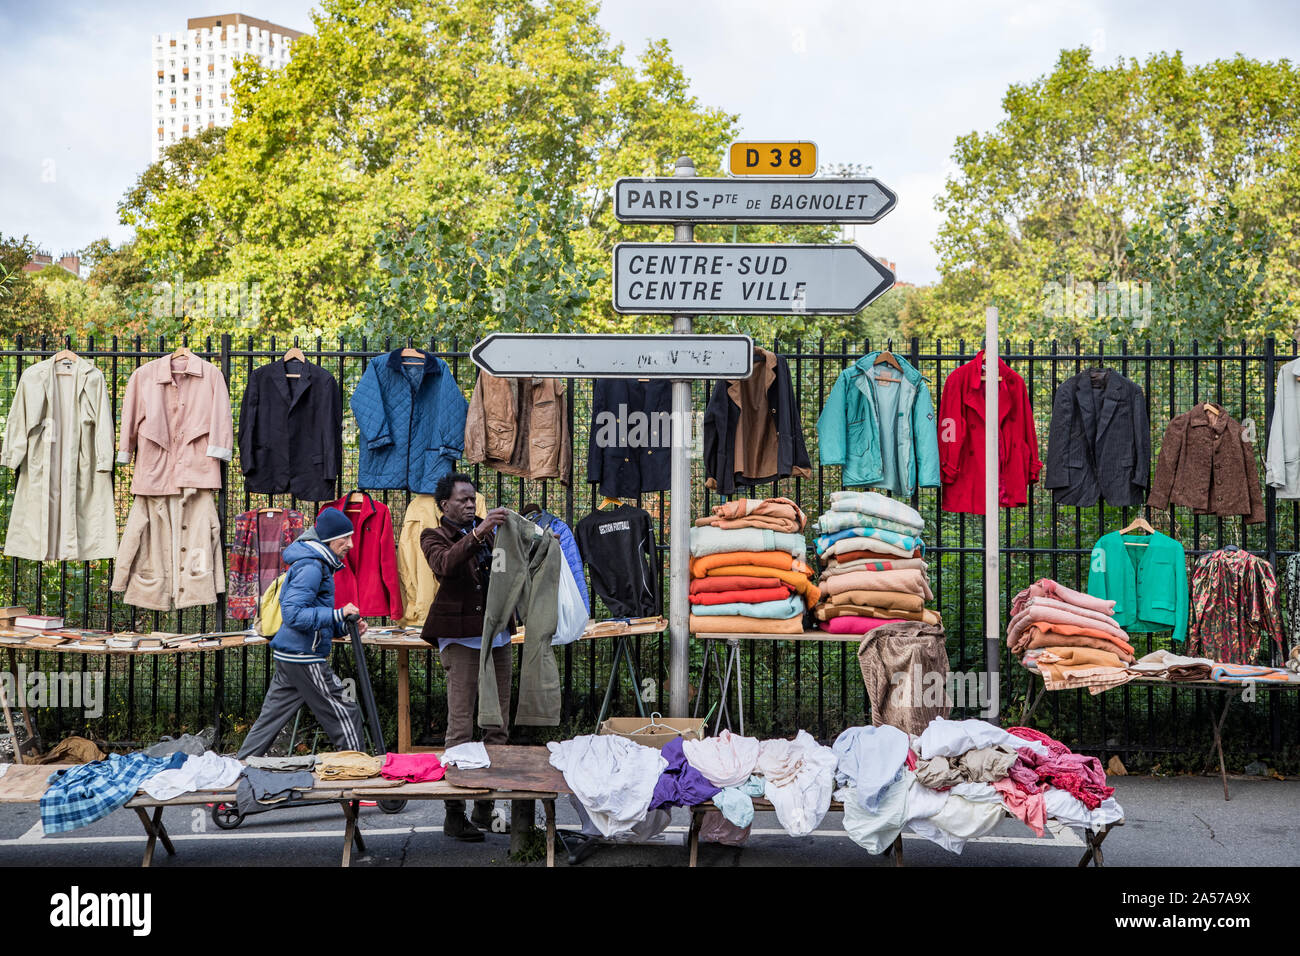 Parigi, Francia - 30 settembre, 2019: People shopping per bargins a Montreuil mercatino delle pulci. Uno dei più antichi mercatini delle pulci nella capitale. È Foto Stock